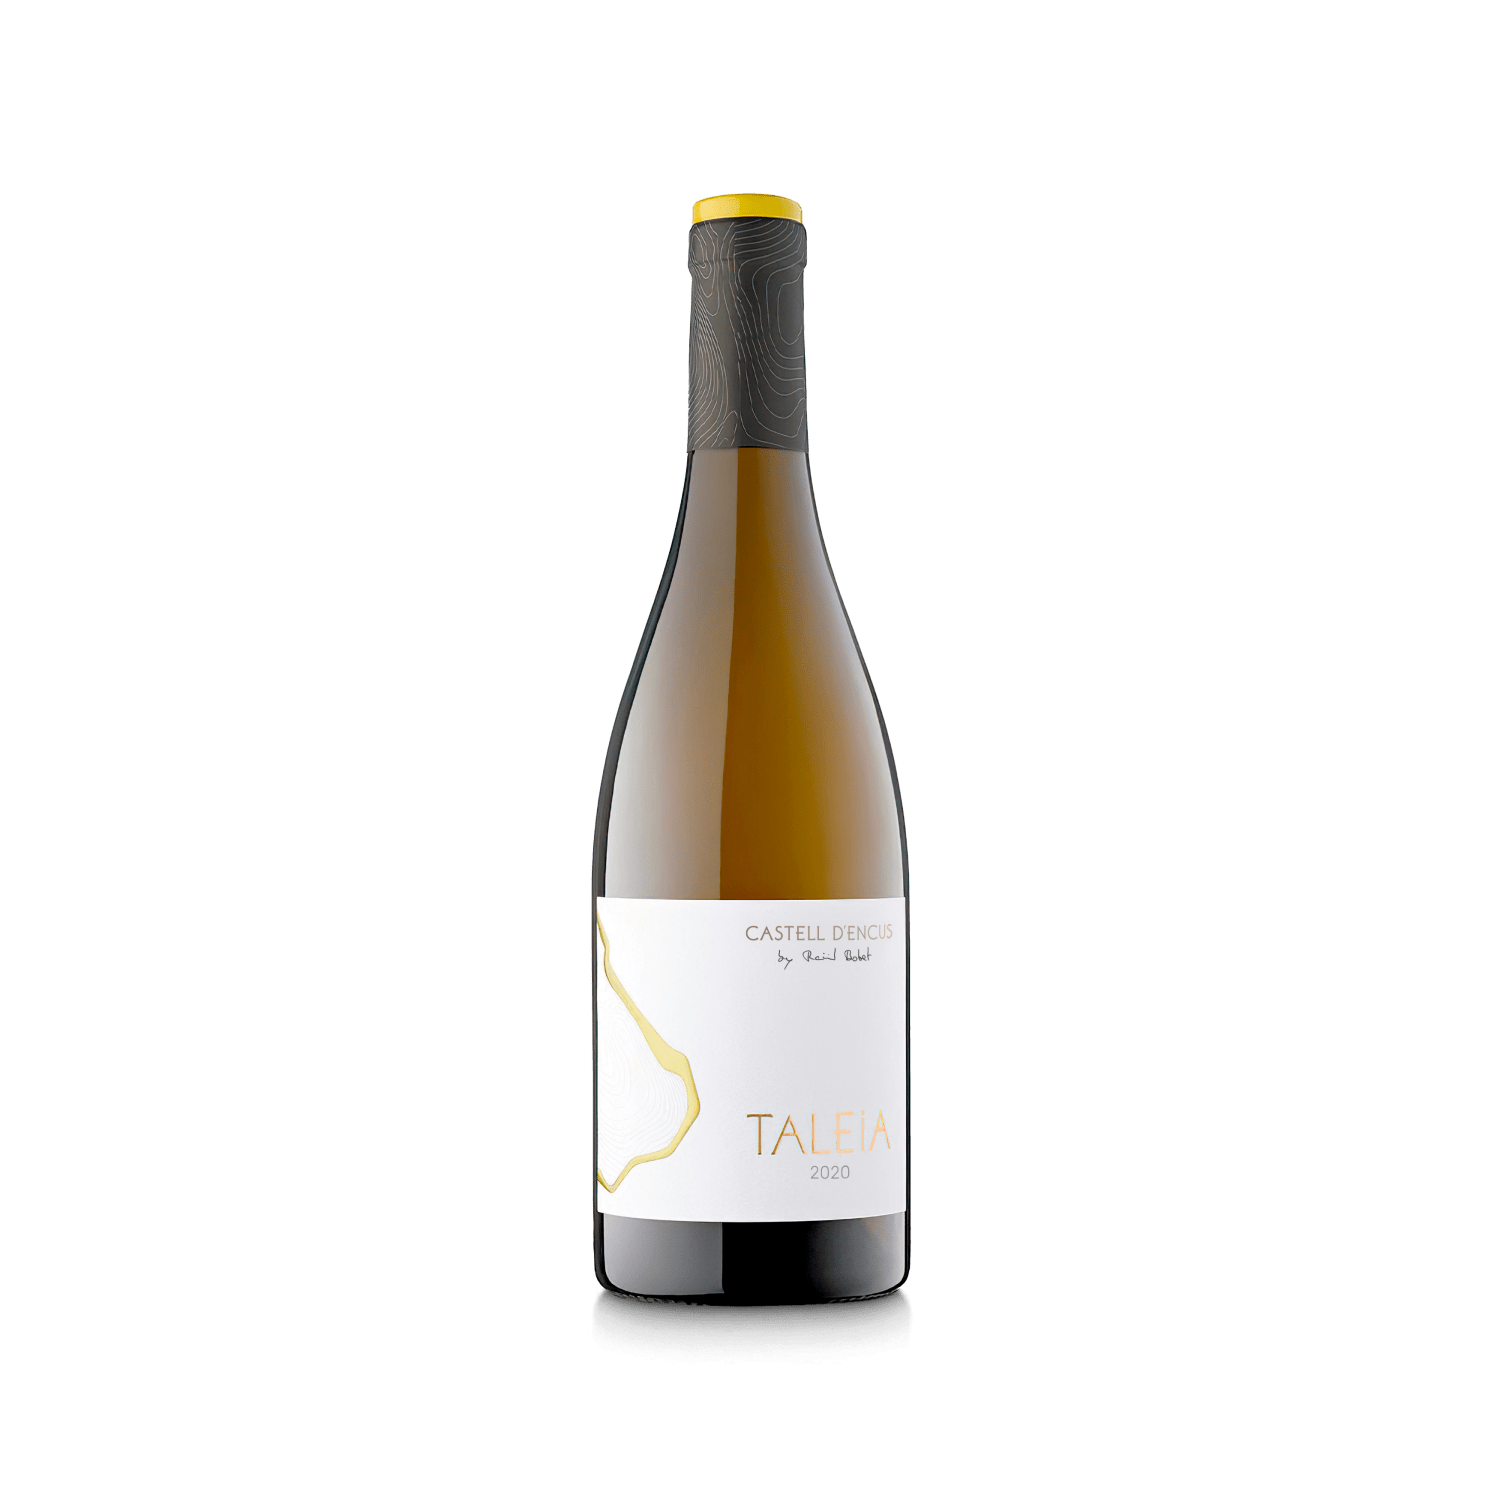 Ampolla d'estudi del vi TALEIA anyada 2020